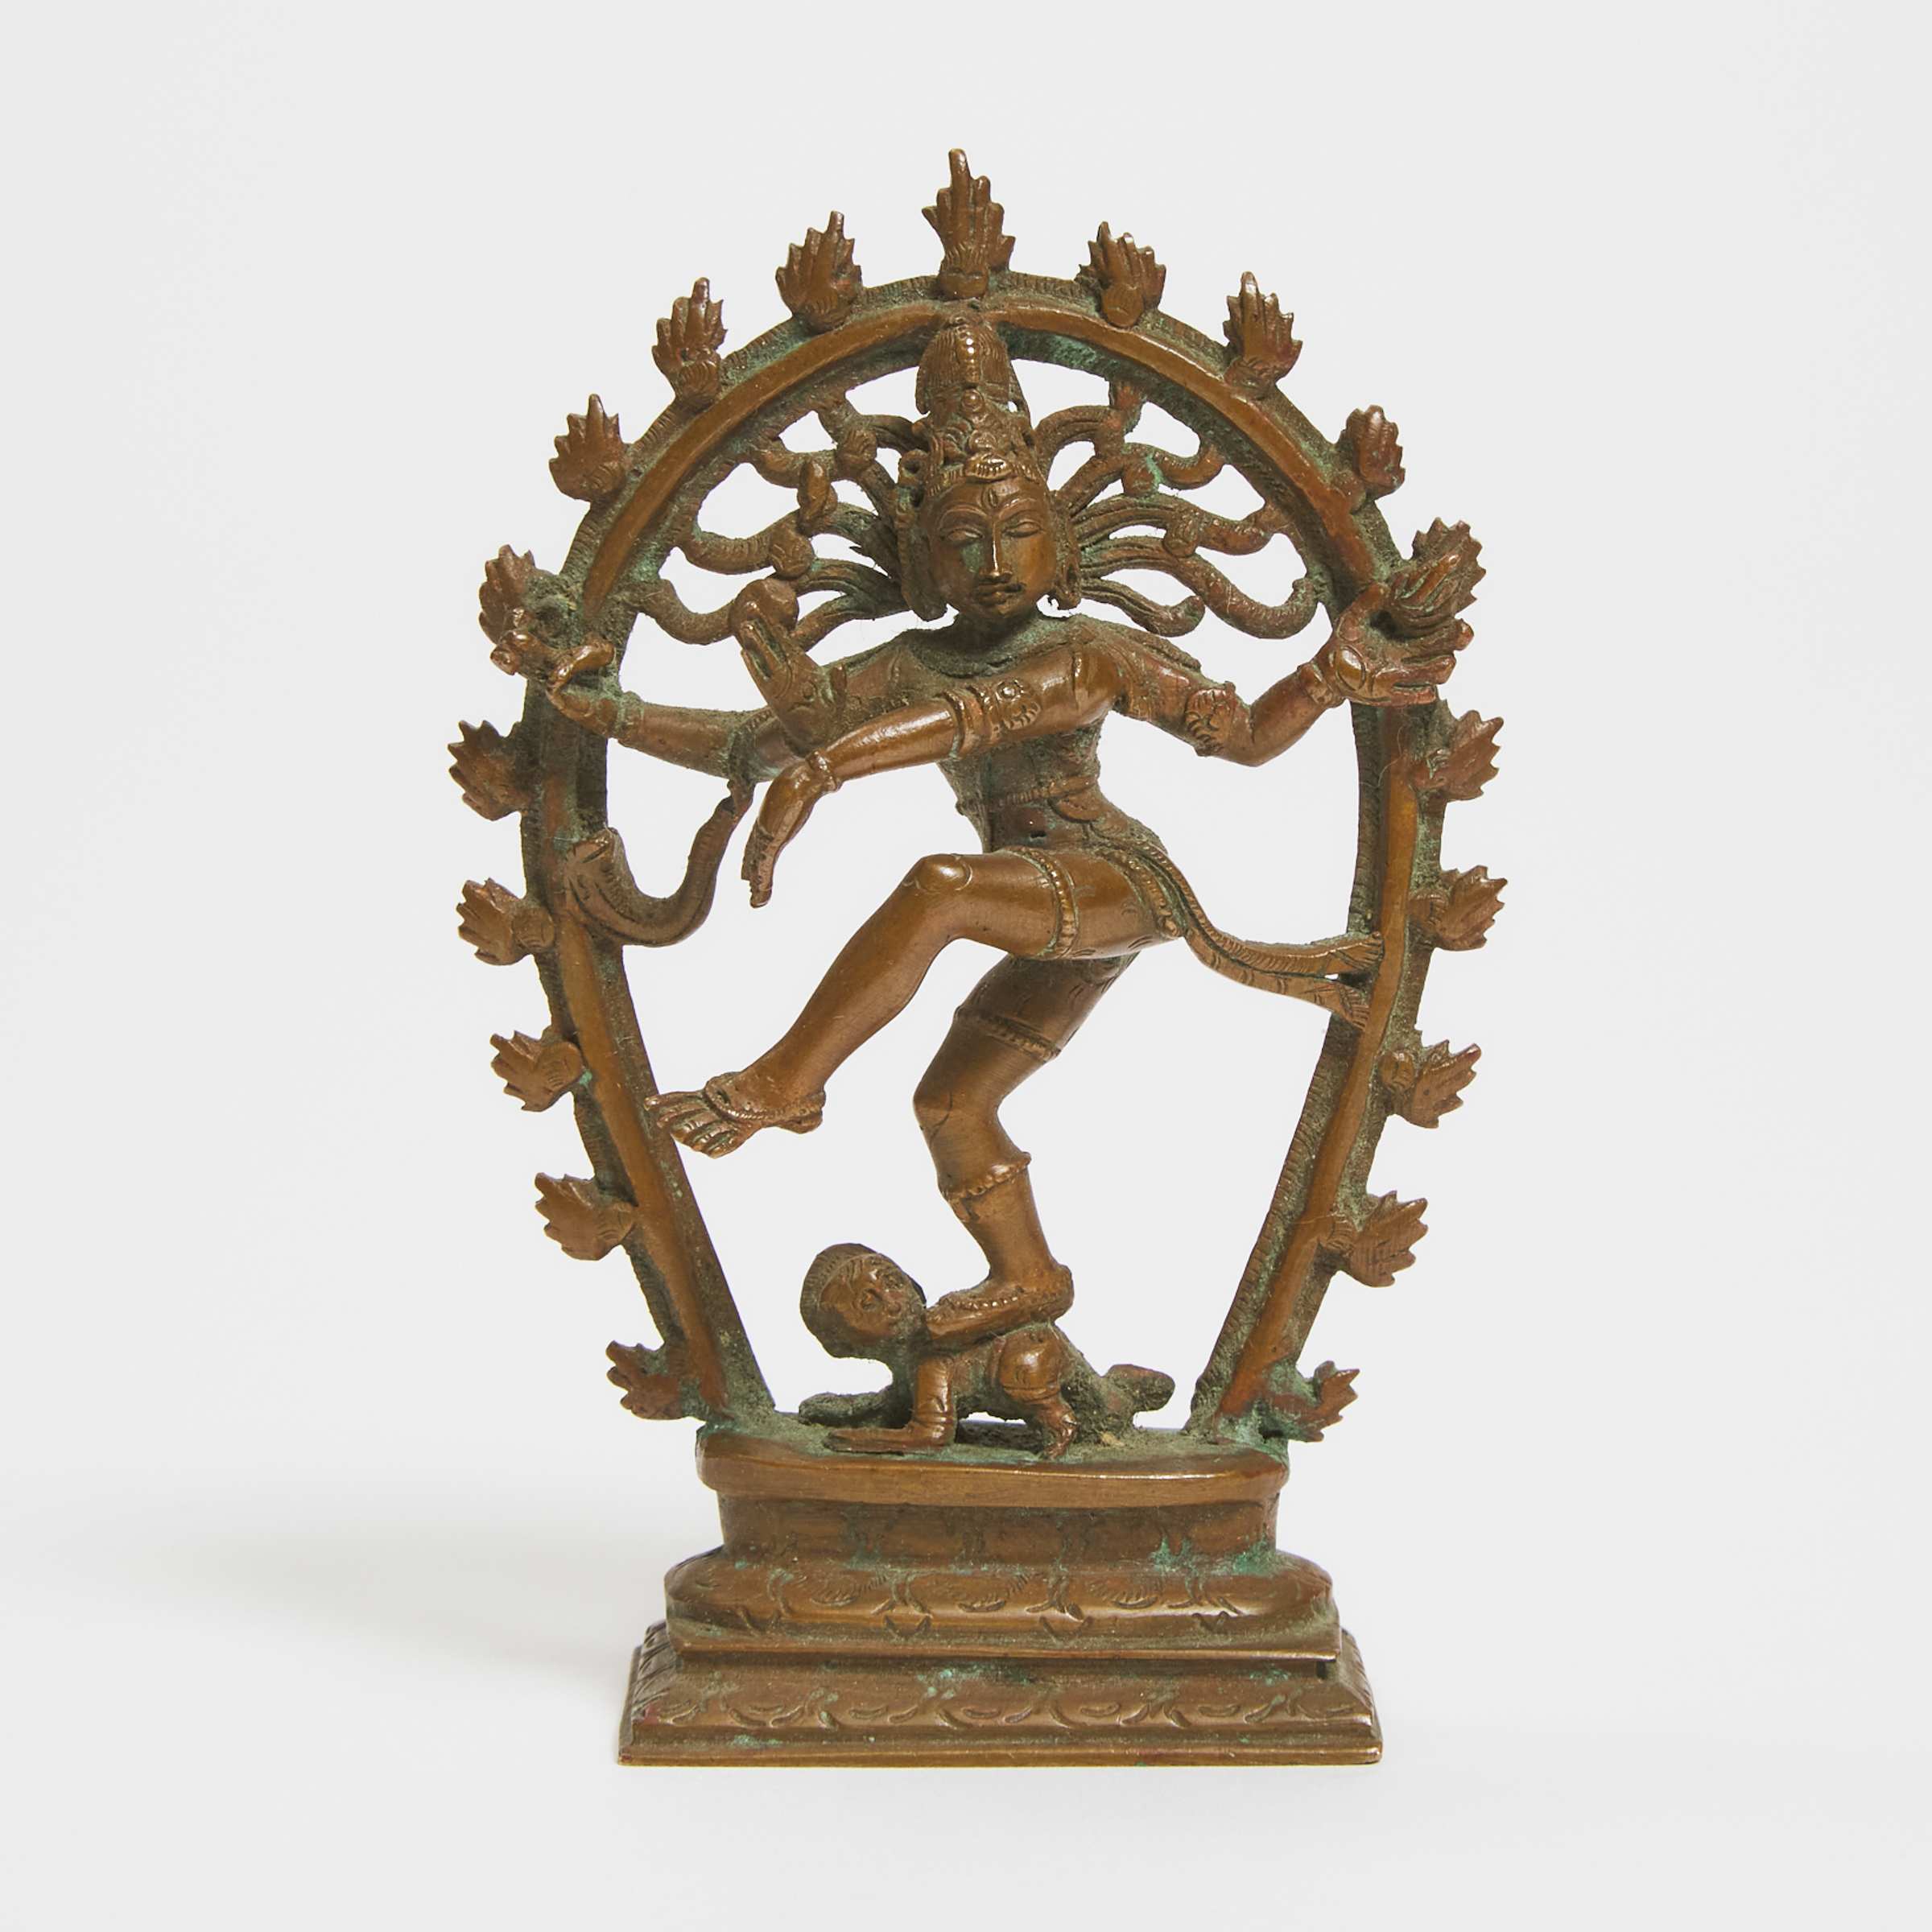 A Small Copper Figure of Shiva